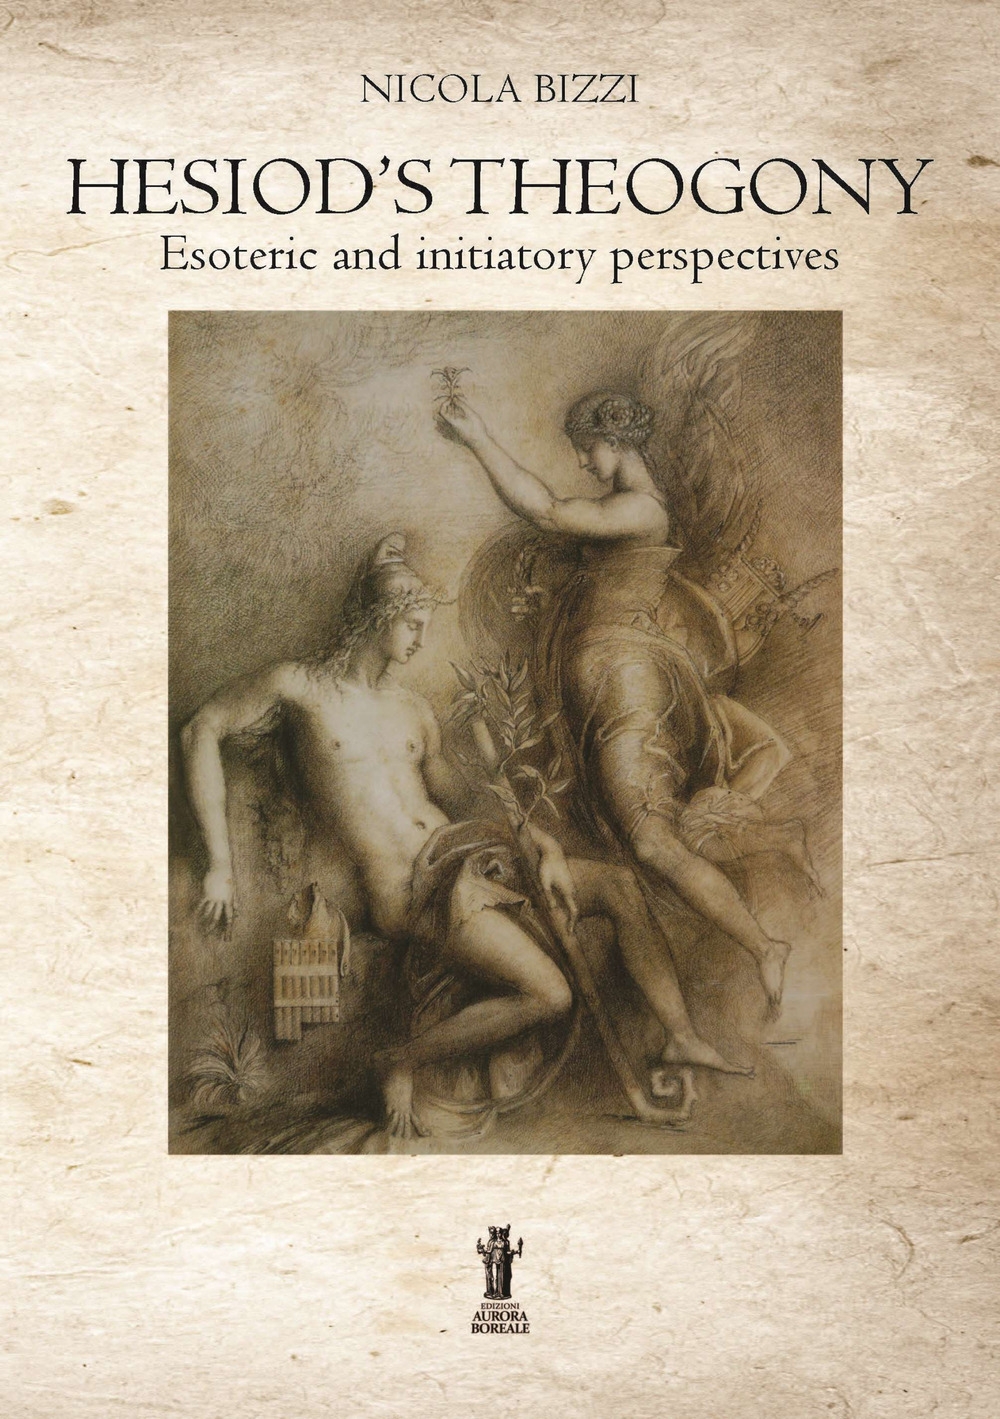 Libri Nicola Bizzi - Hesiod's Theogony: Esoteric And Initiatory Perspectives NUOVO SIGILLATO, EDIZIONE DEL 05/03/2022 SUBITO DISPONIBILE